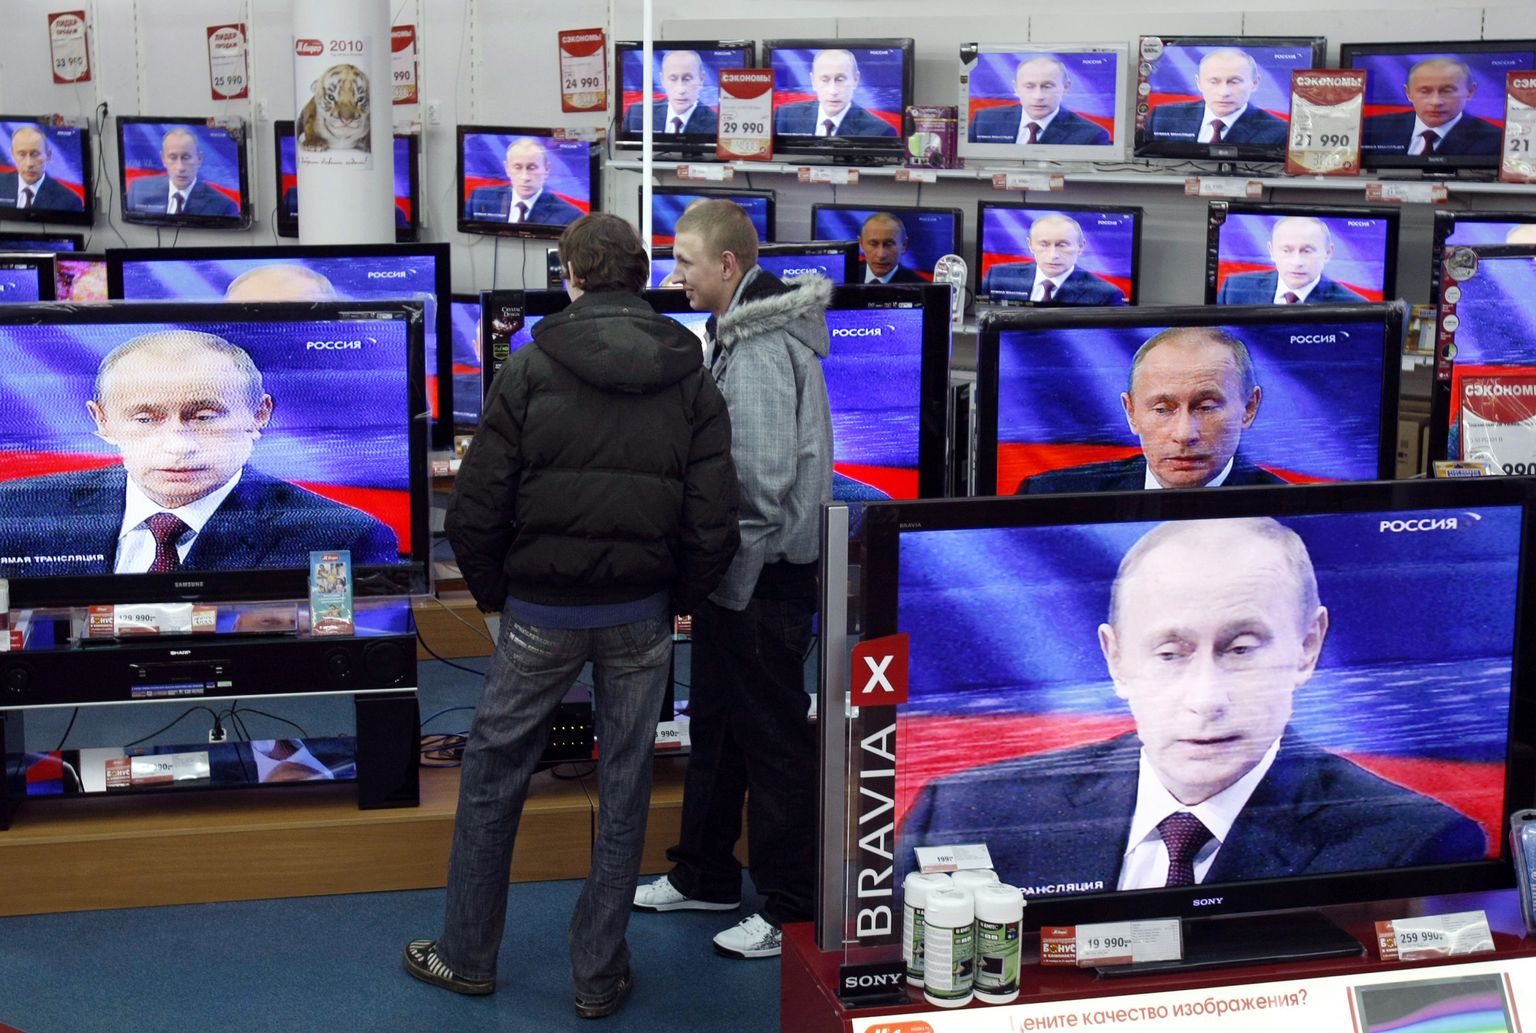 Mehed vaatamas televiisorist Venemaa presidendi Vladimir Putini kõnet. Pilt on illustratiivne